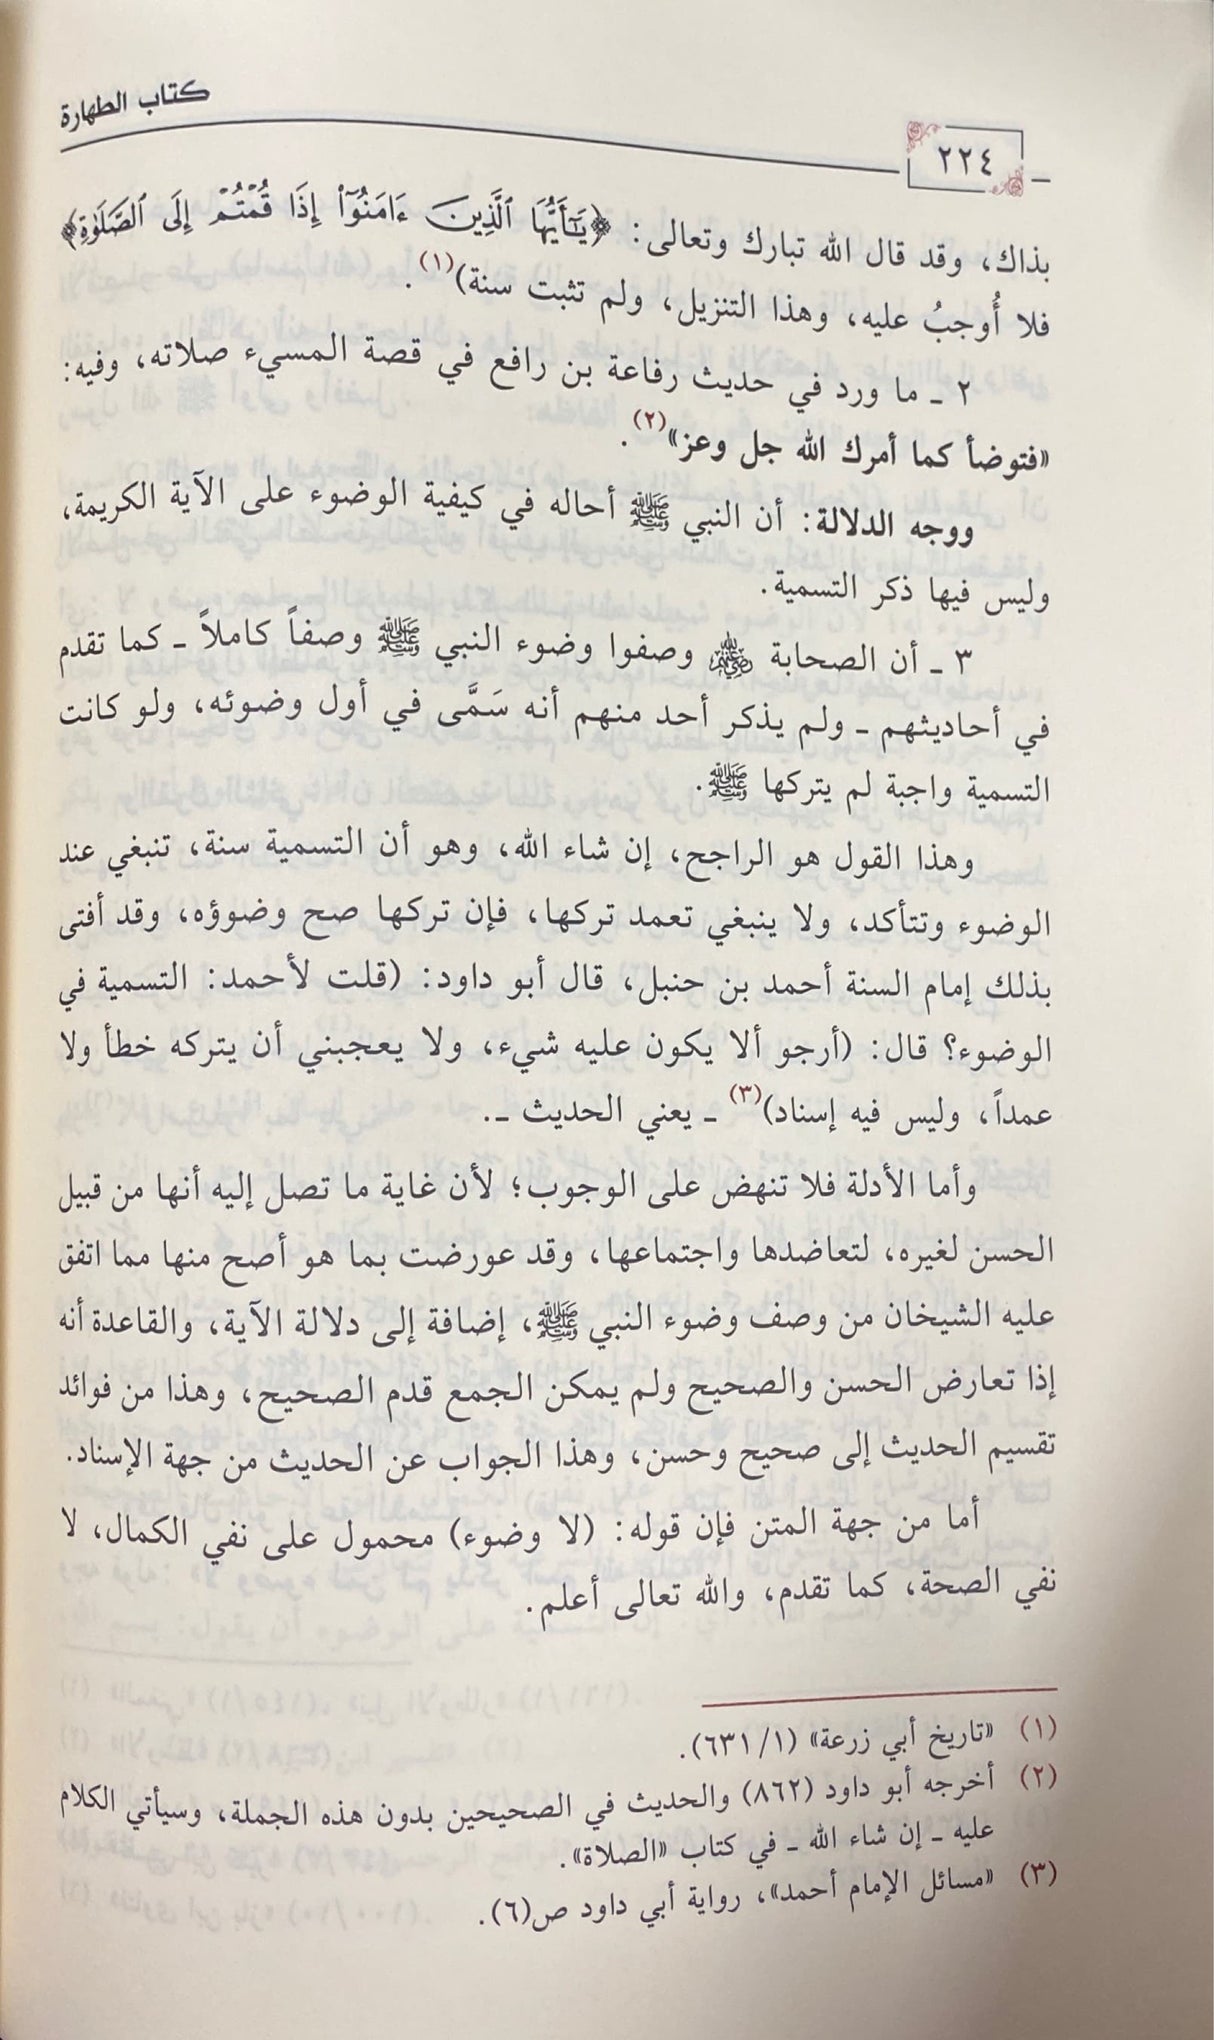 منحة العلام في شرح بلوغ المرام    Minhatul Alaam Fi Sharh Bulugh Al Maram (11 Volume Set)